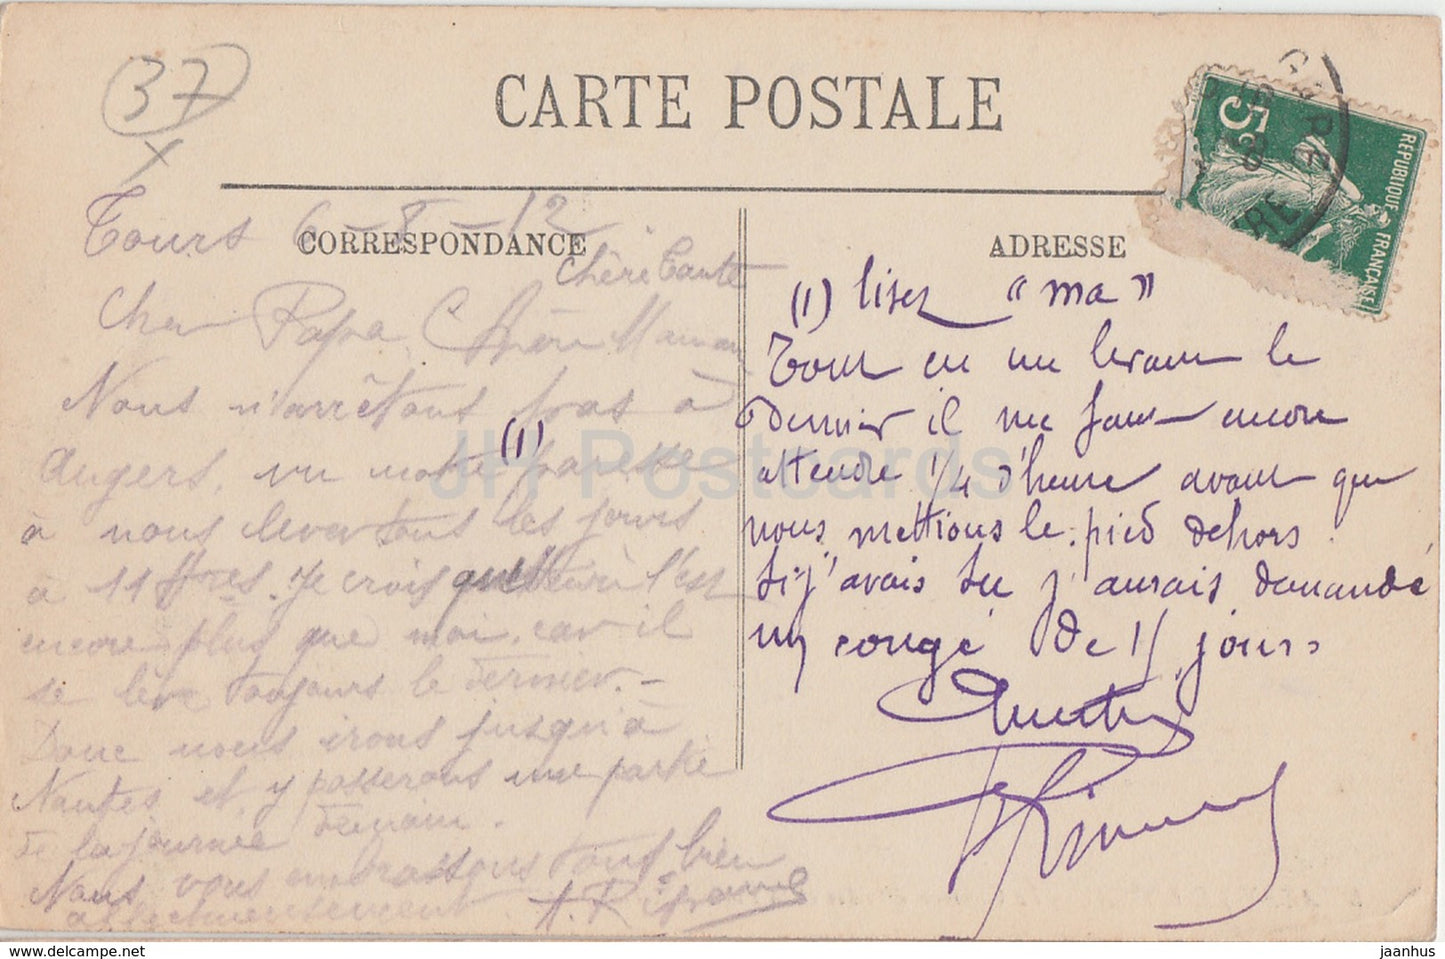 Azay Le Rideau - Le Château d'Indre et la Facade Meridionale - château - 5 - carte postale ancienne - 1912 - France - utilisé